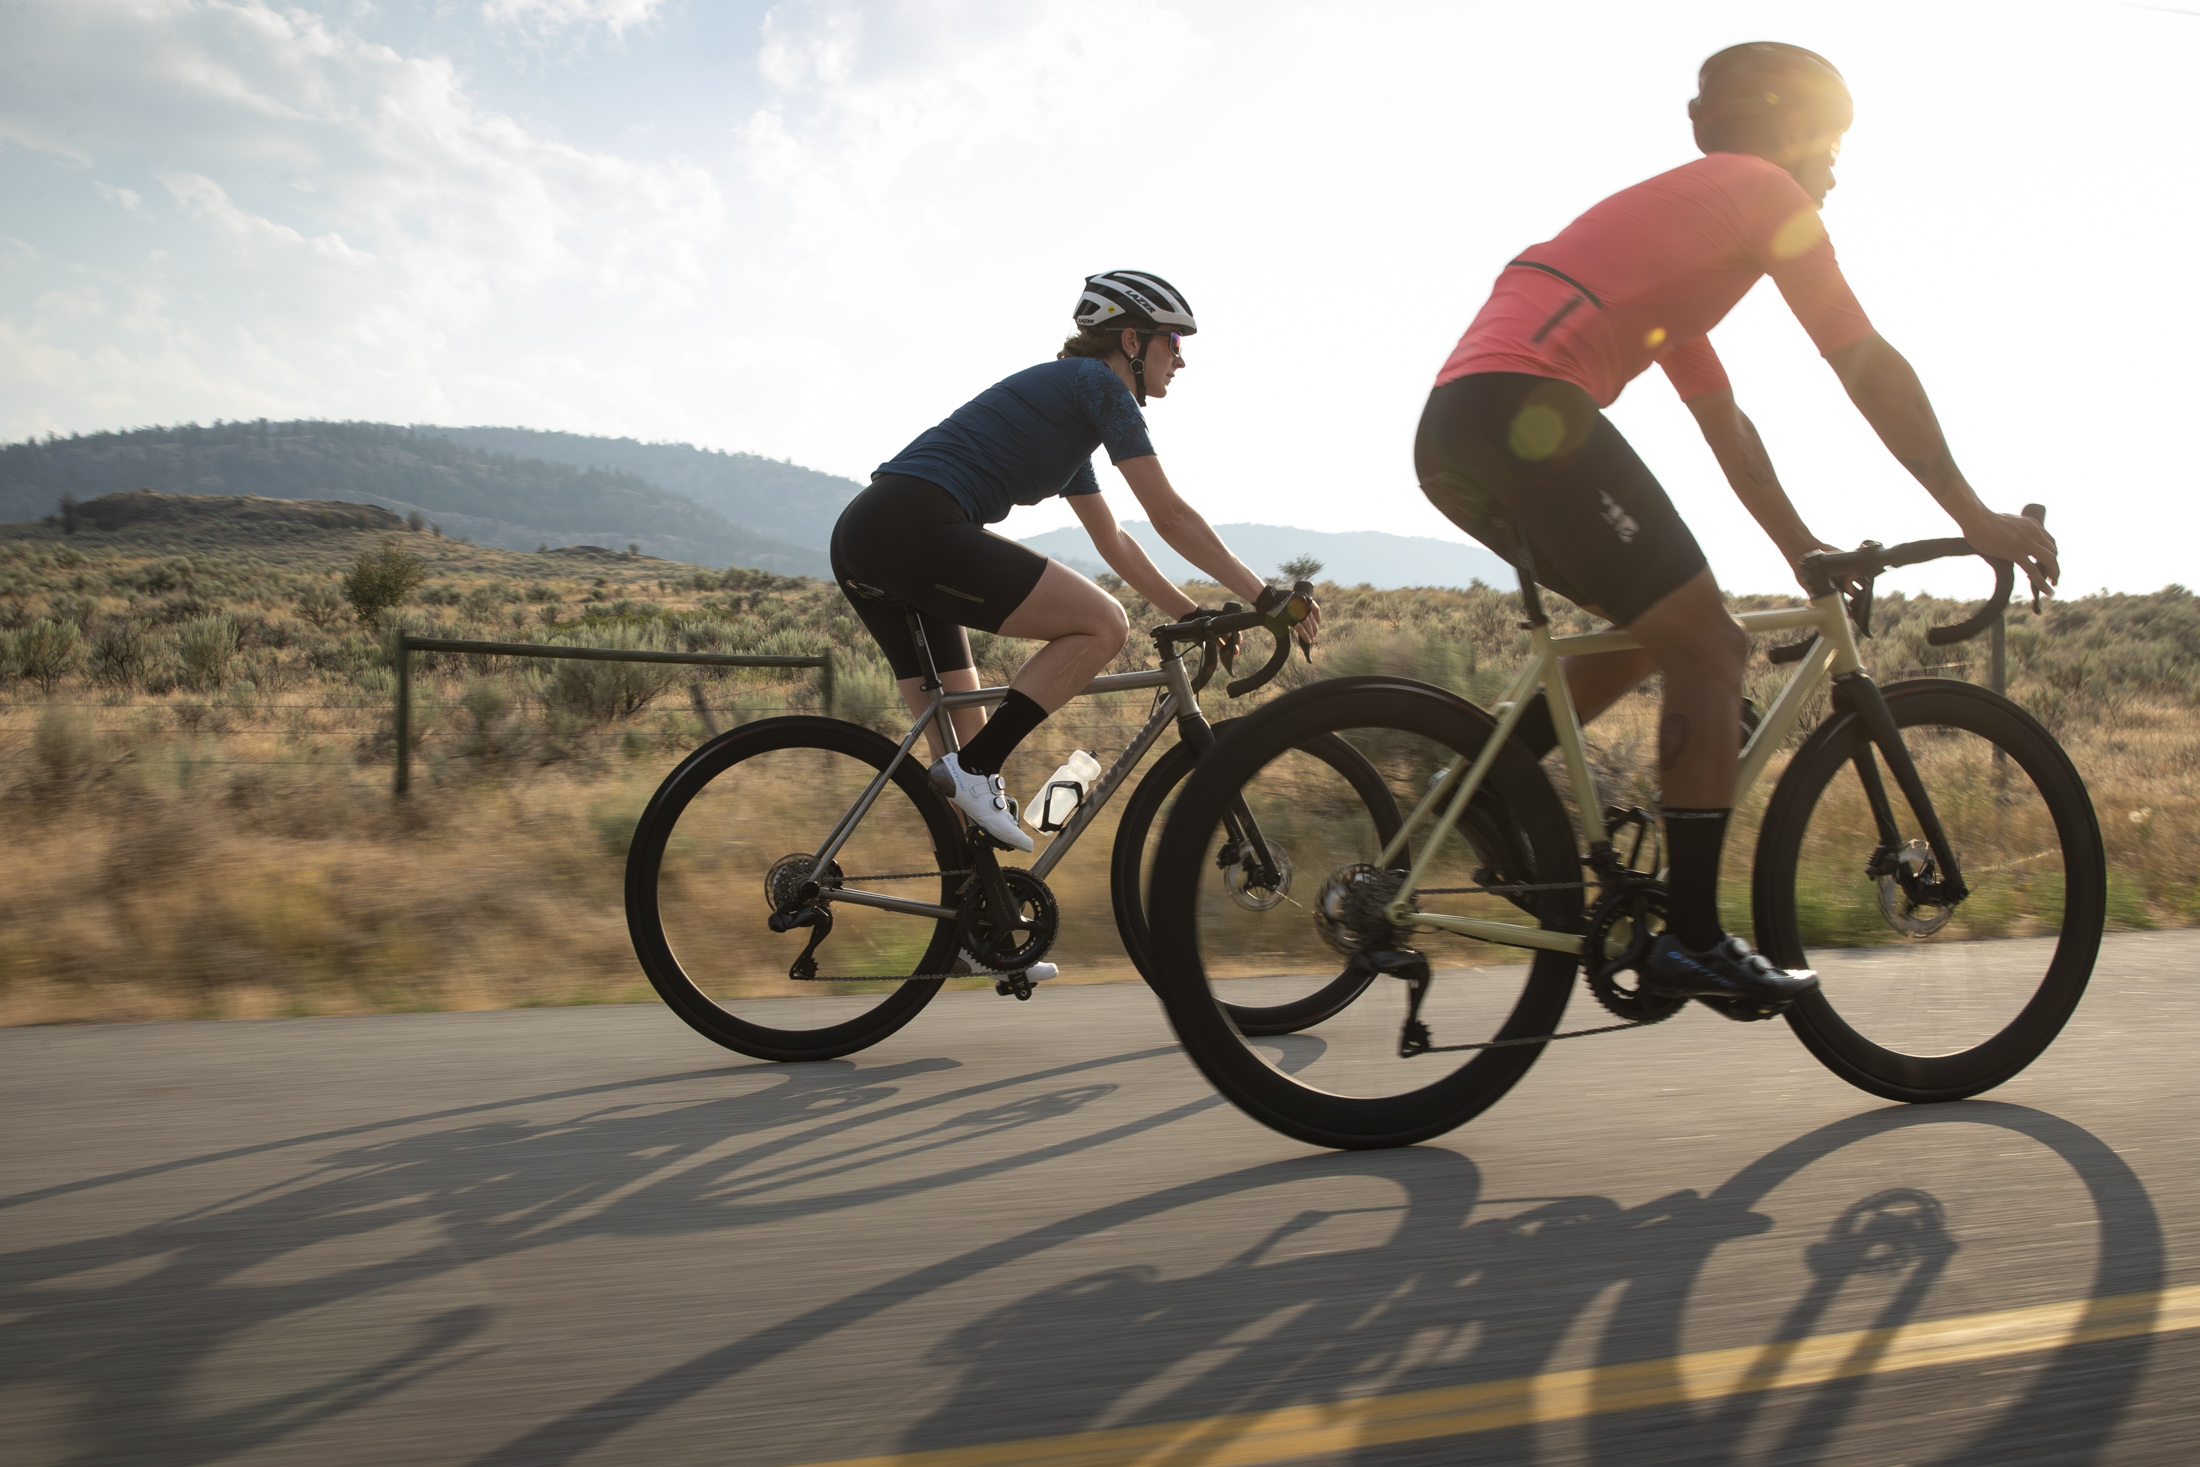 SHIMANO ULTEGRA Carbon-Laufräder für Rennräder